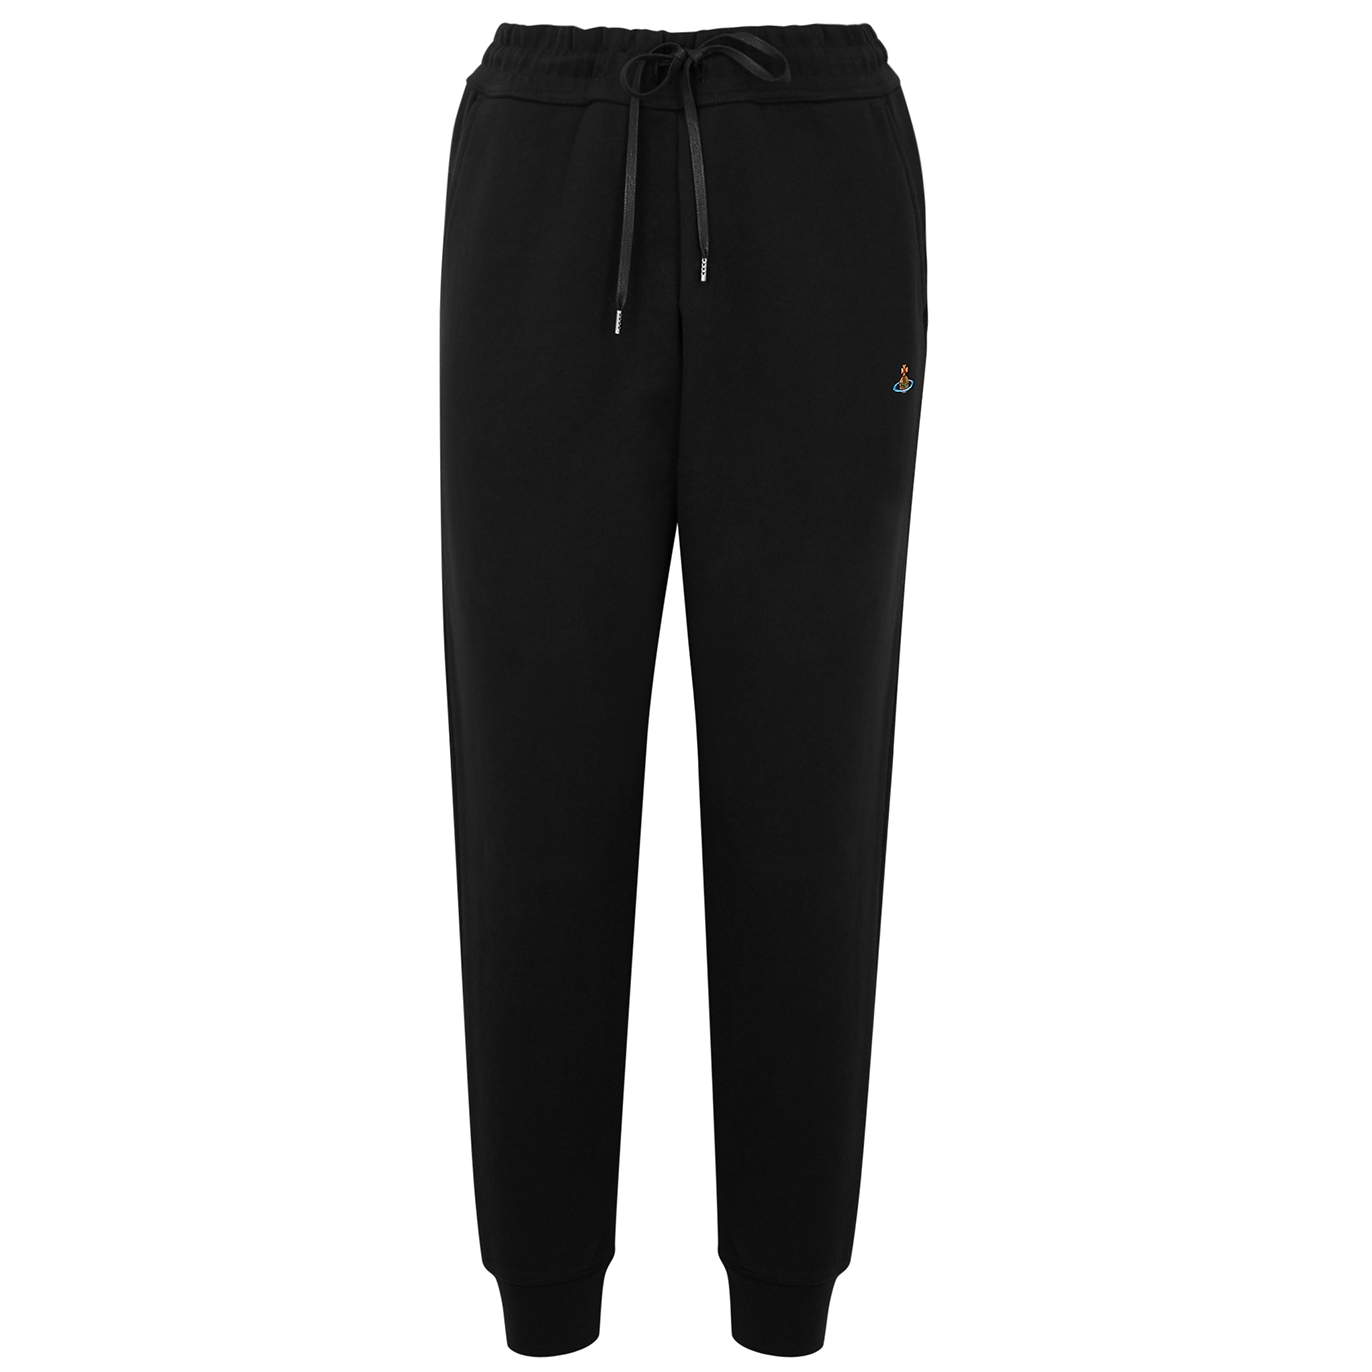 Vivienne Westwood Black Cotton Sweatpants